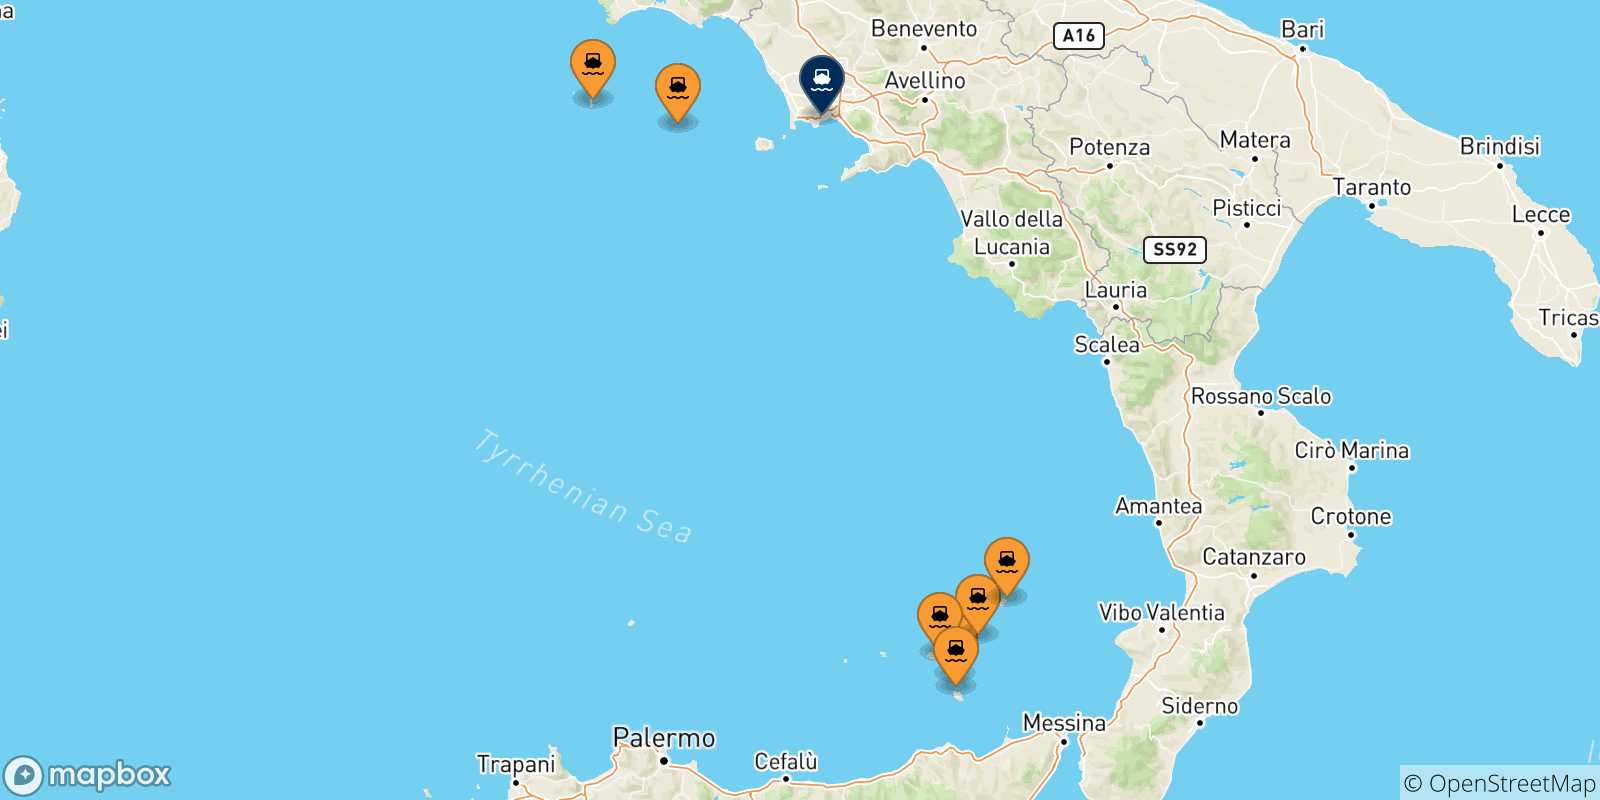 Mappa delle possibili rotte tra l'Italia e Napoli Mergellina